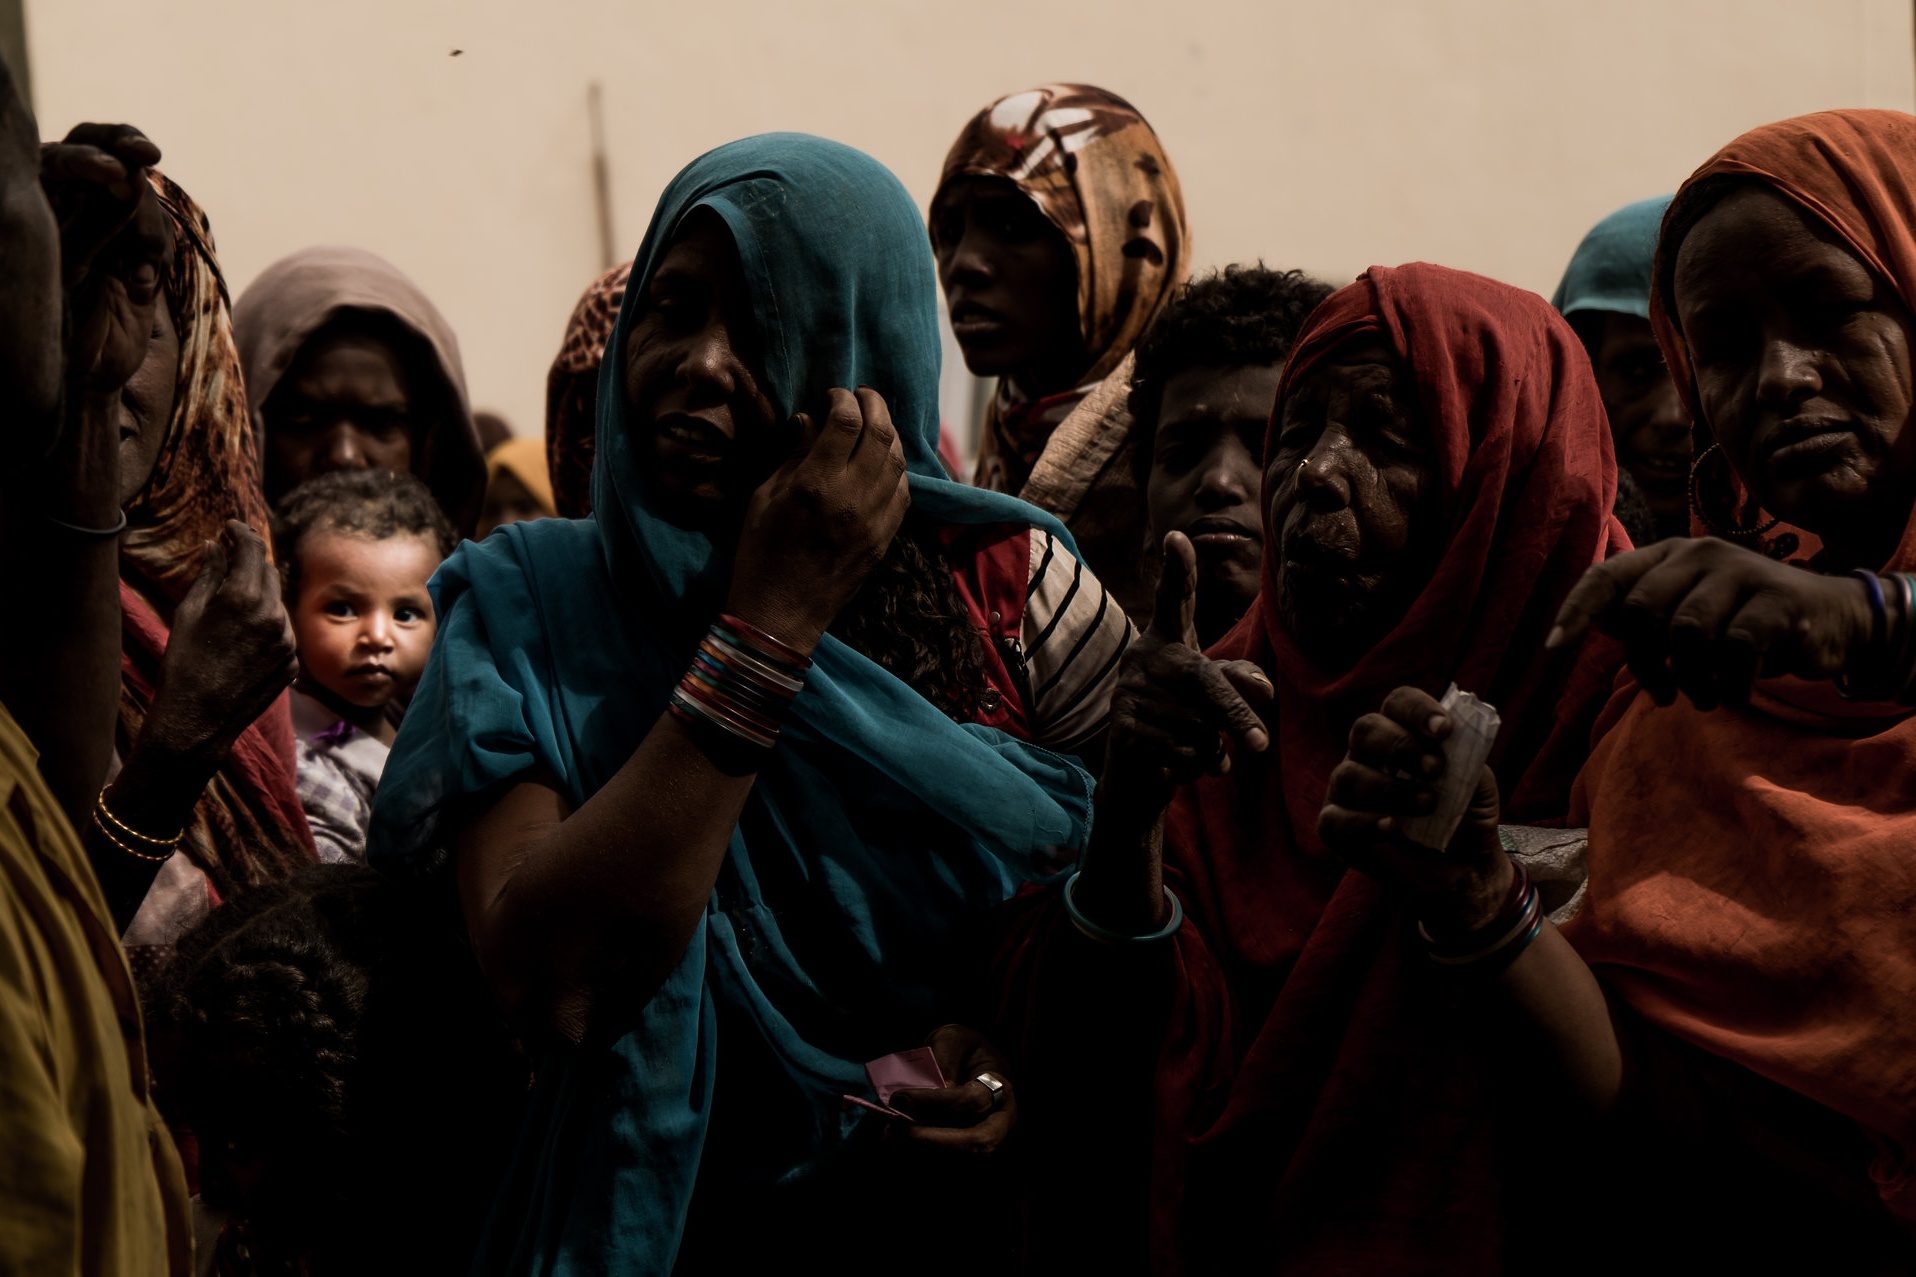 Soedan hoopt op economisch herstel via vrede met Israël: ‘Een hongerig man kan zich geen idealen veroorloven’